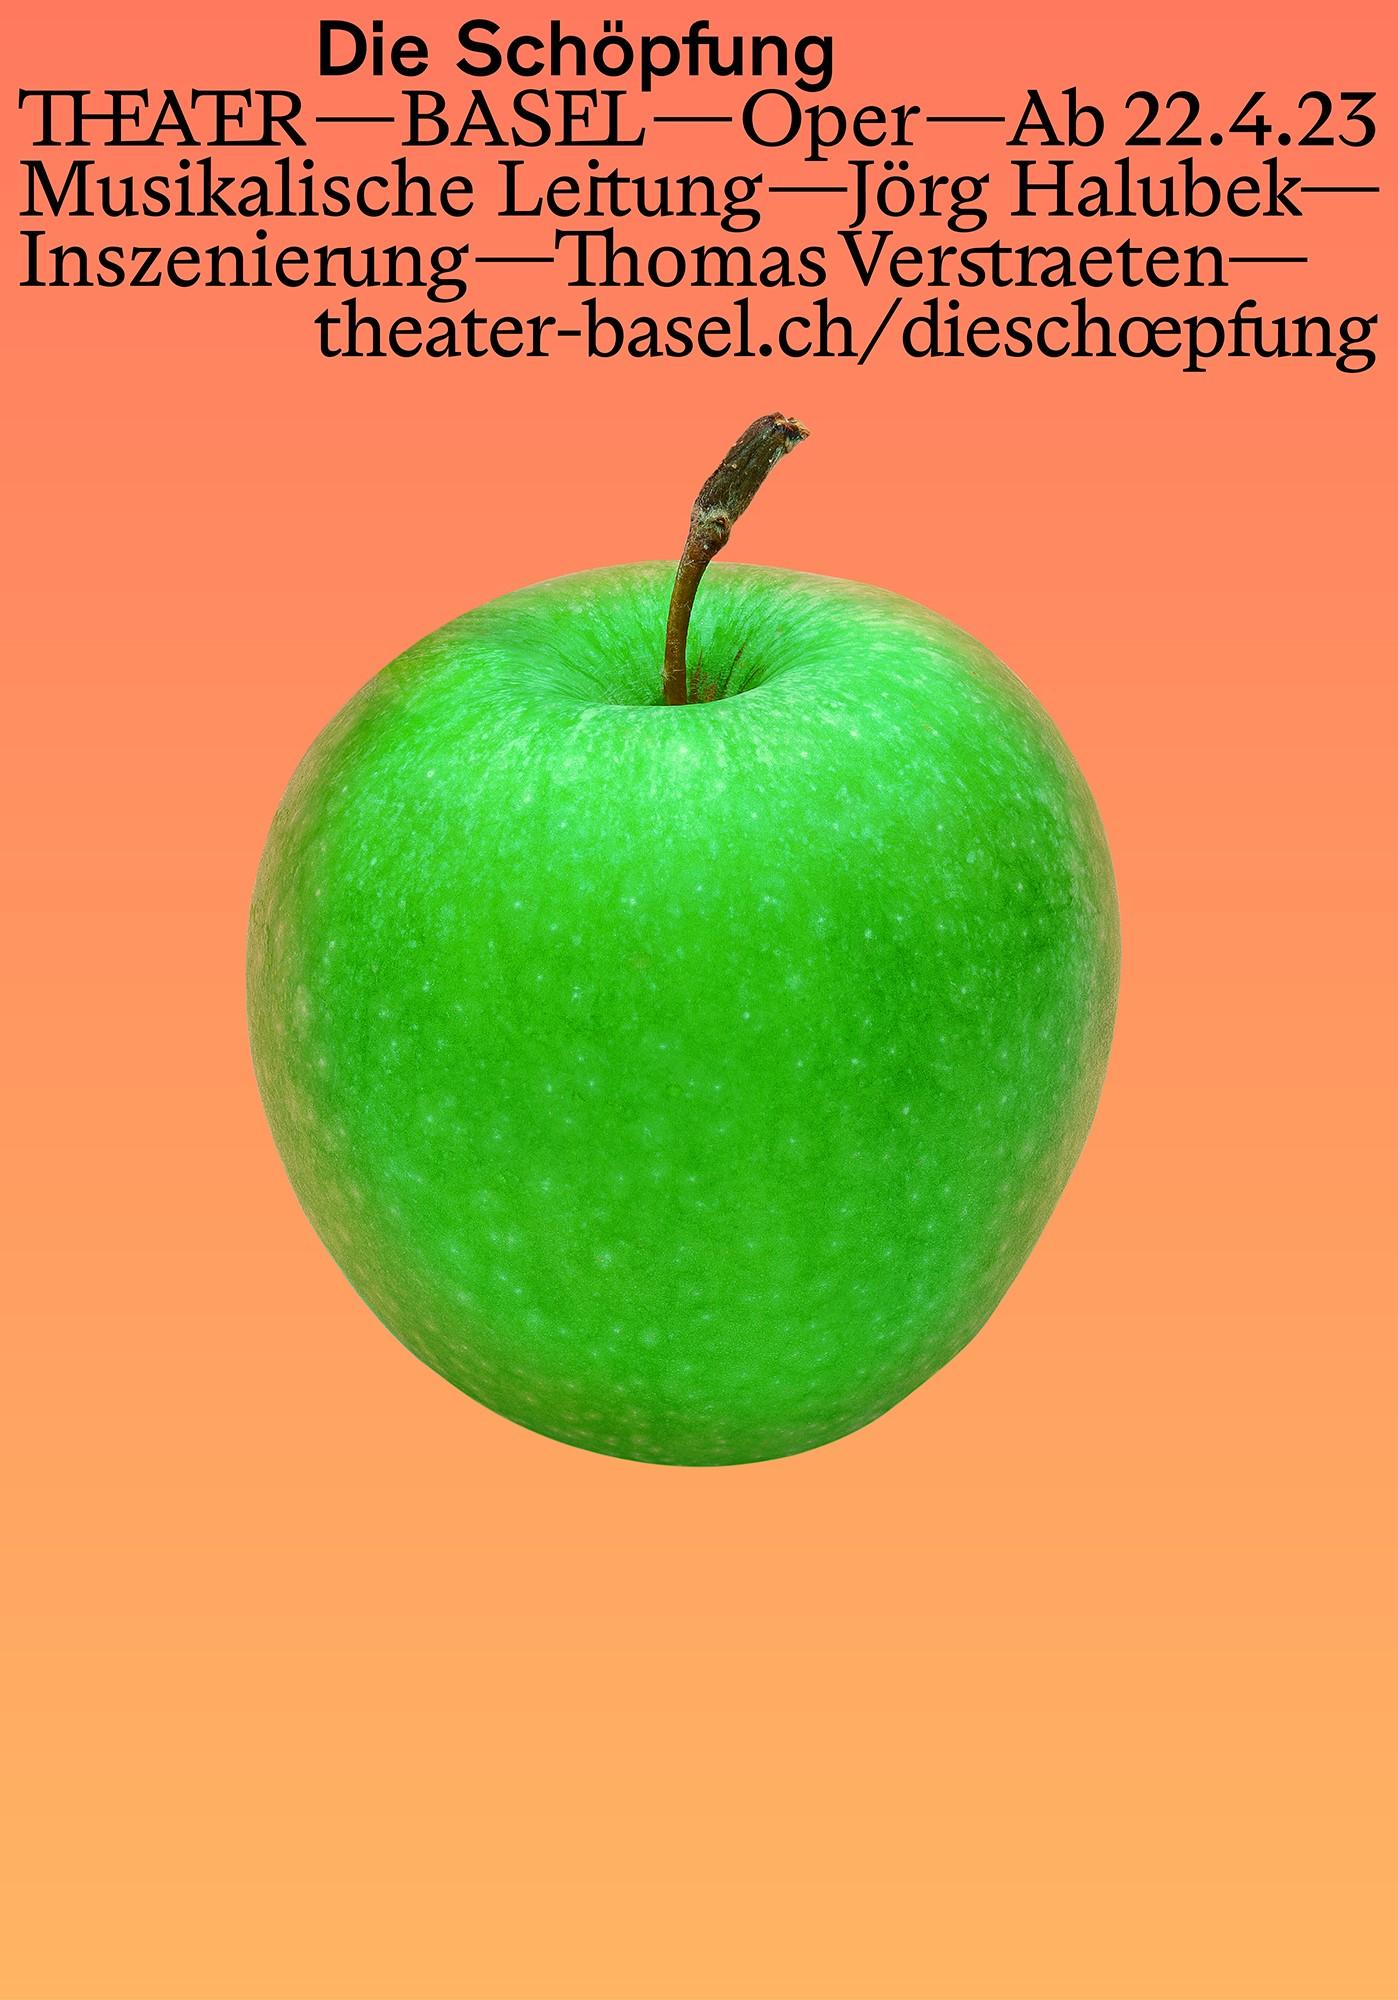 Plakatmotiv 1 für Die Schöpfung - ein grüner Apfel auf orangenem Hintergrund